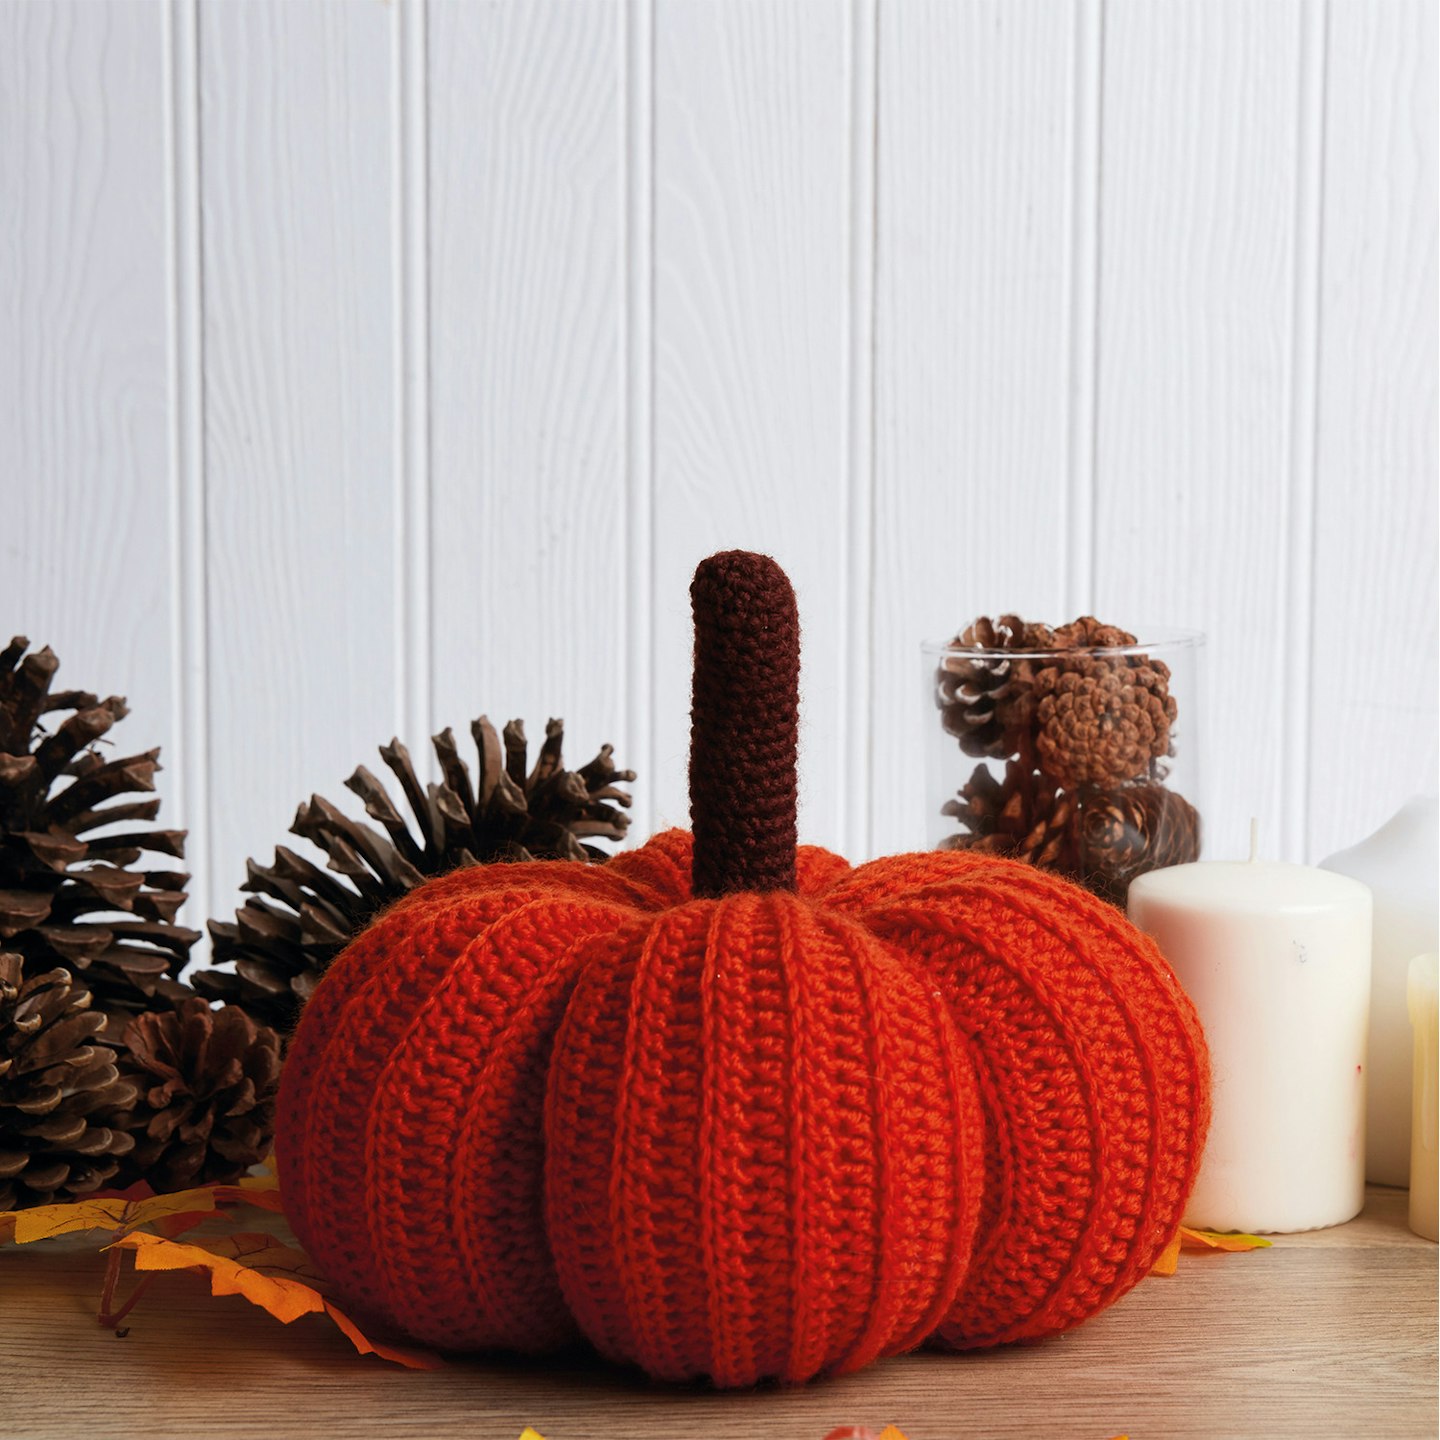 Crochet pumpkins set